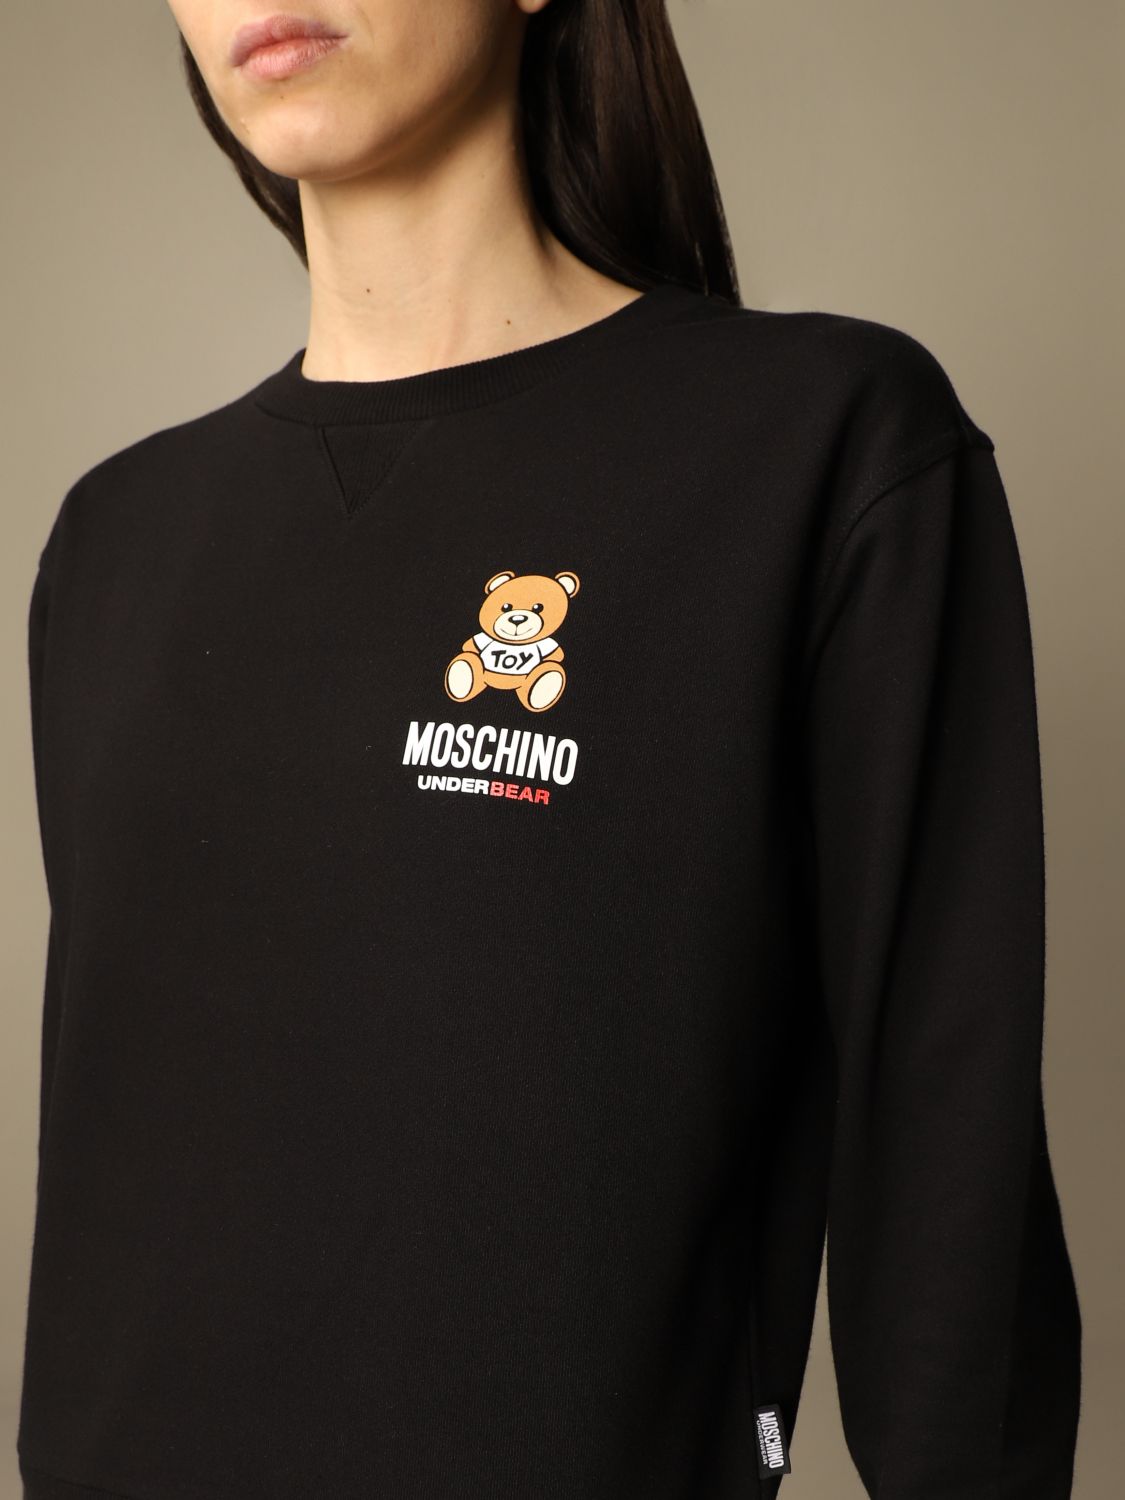 moschino underwear sweater